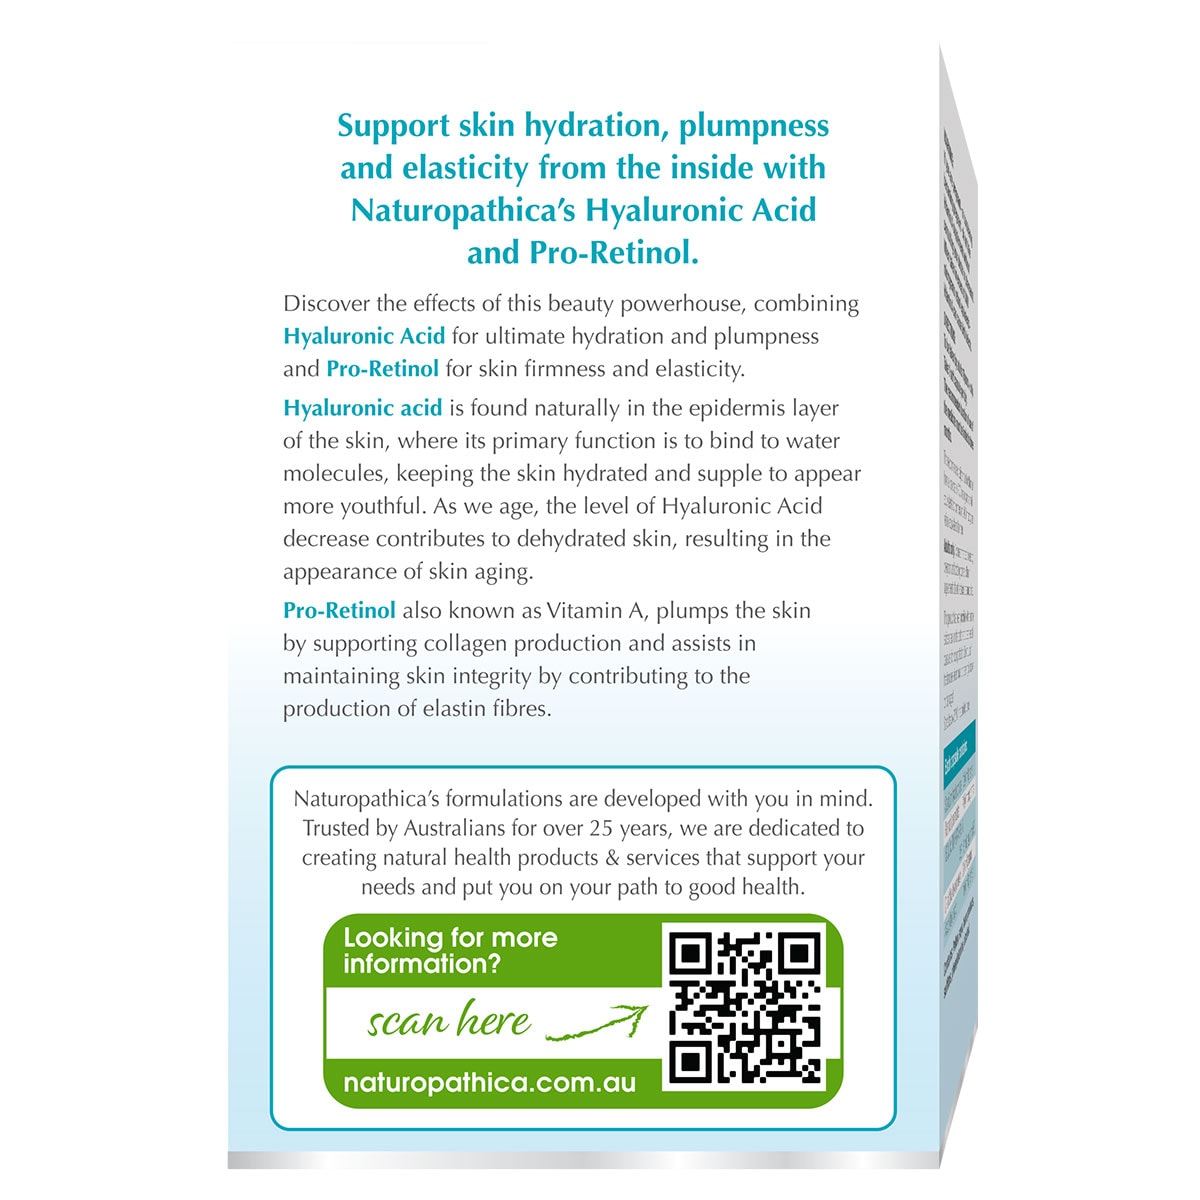 Naturopathica Collagenix Hyaluronic Acid + Pro-Retinol 30 Capsules